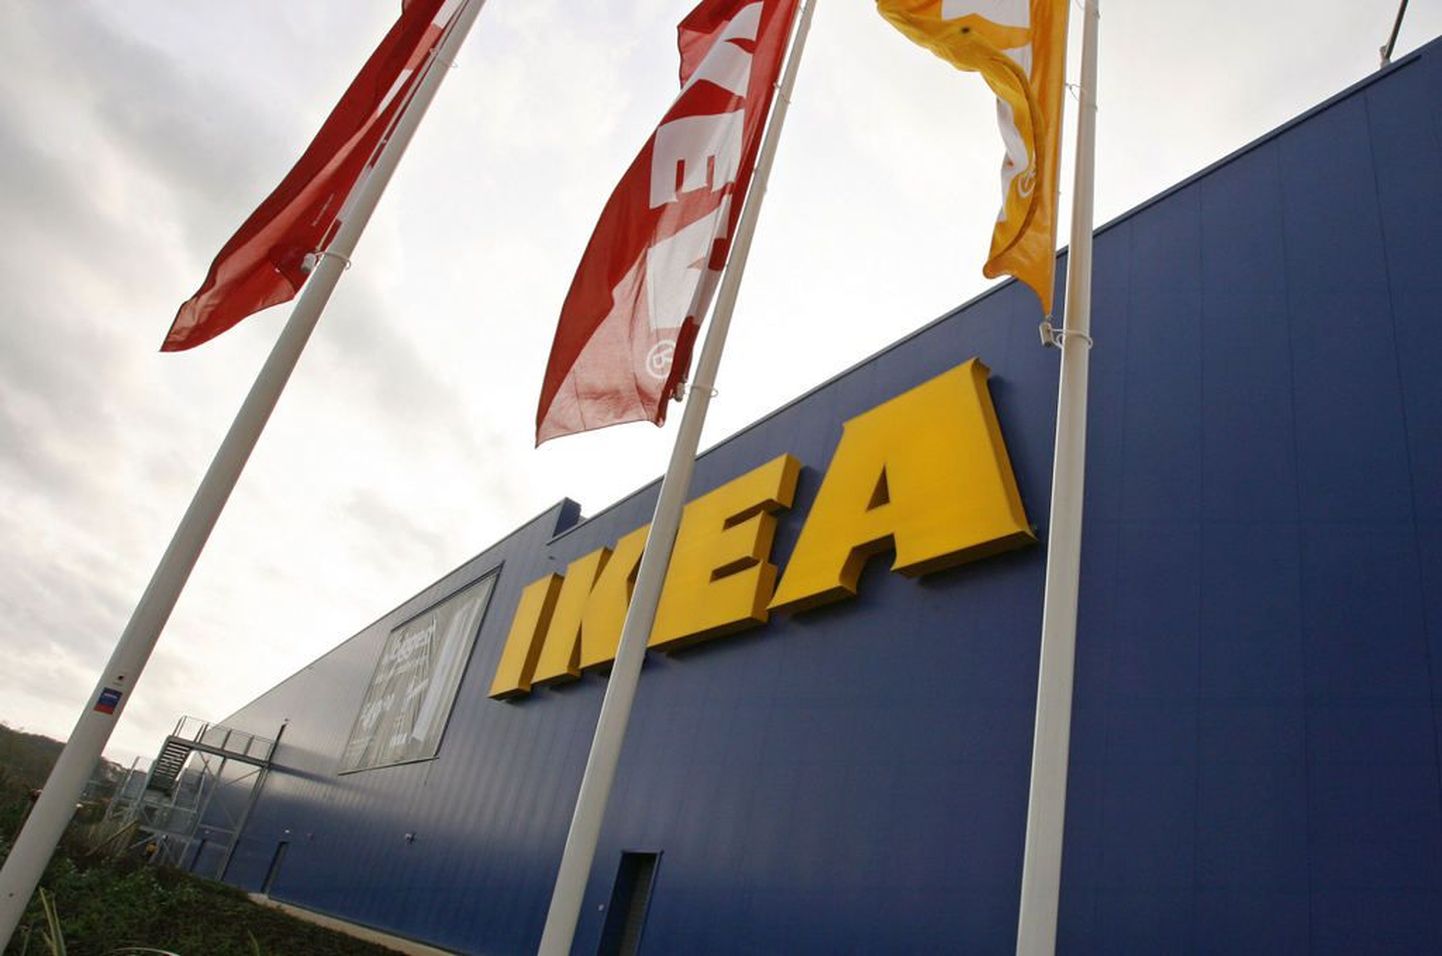 Rootsi mööblitootja Ikea meiliserver oli teadmata aja küberkurjategijate vabas kasutuses. Pildil Ikea sisustuskaubamaja Põhja-Iirimaal.